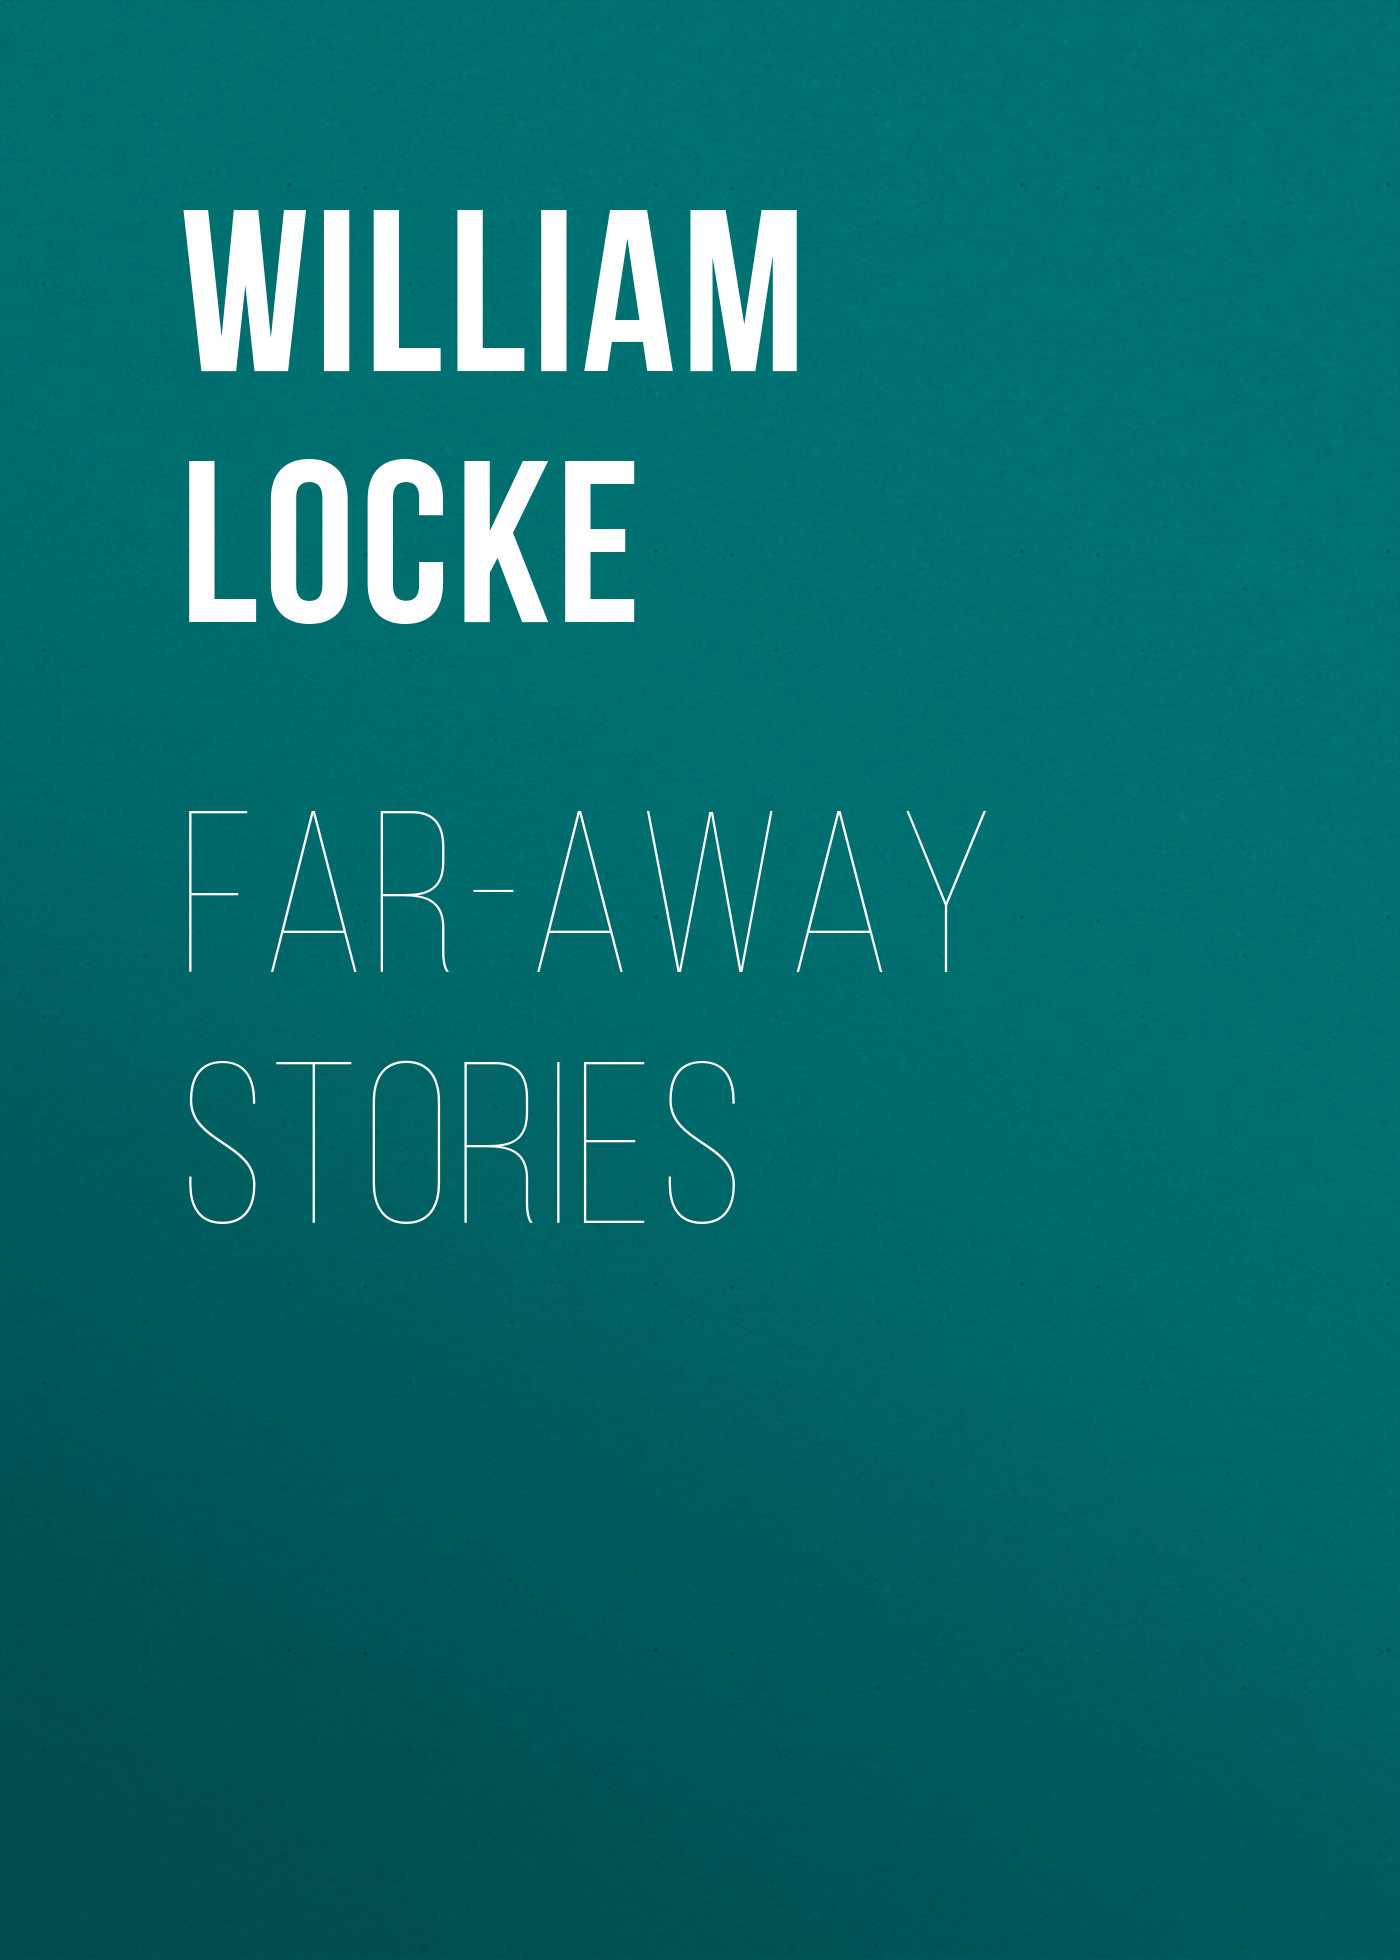 Книга Far-away Stories из серии , созданная William Locke, может относится к жанру Зарубежная классика. Стоимость электронной книги Far-away Stories с идентификатором 23157651 составляет 5.99 руб.